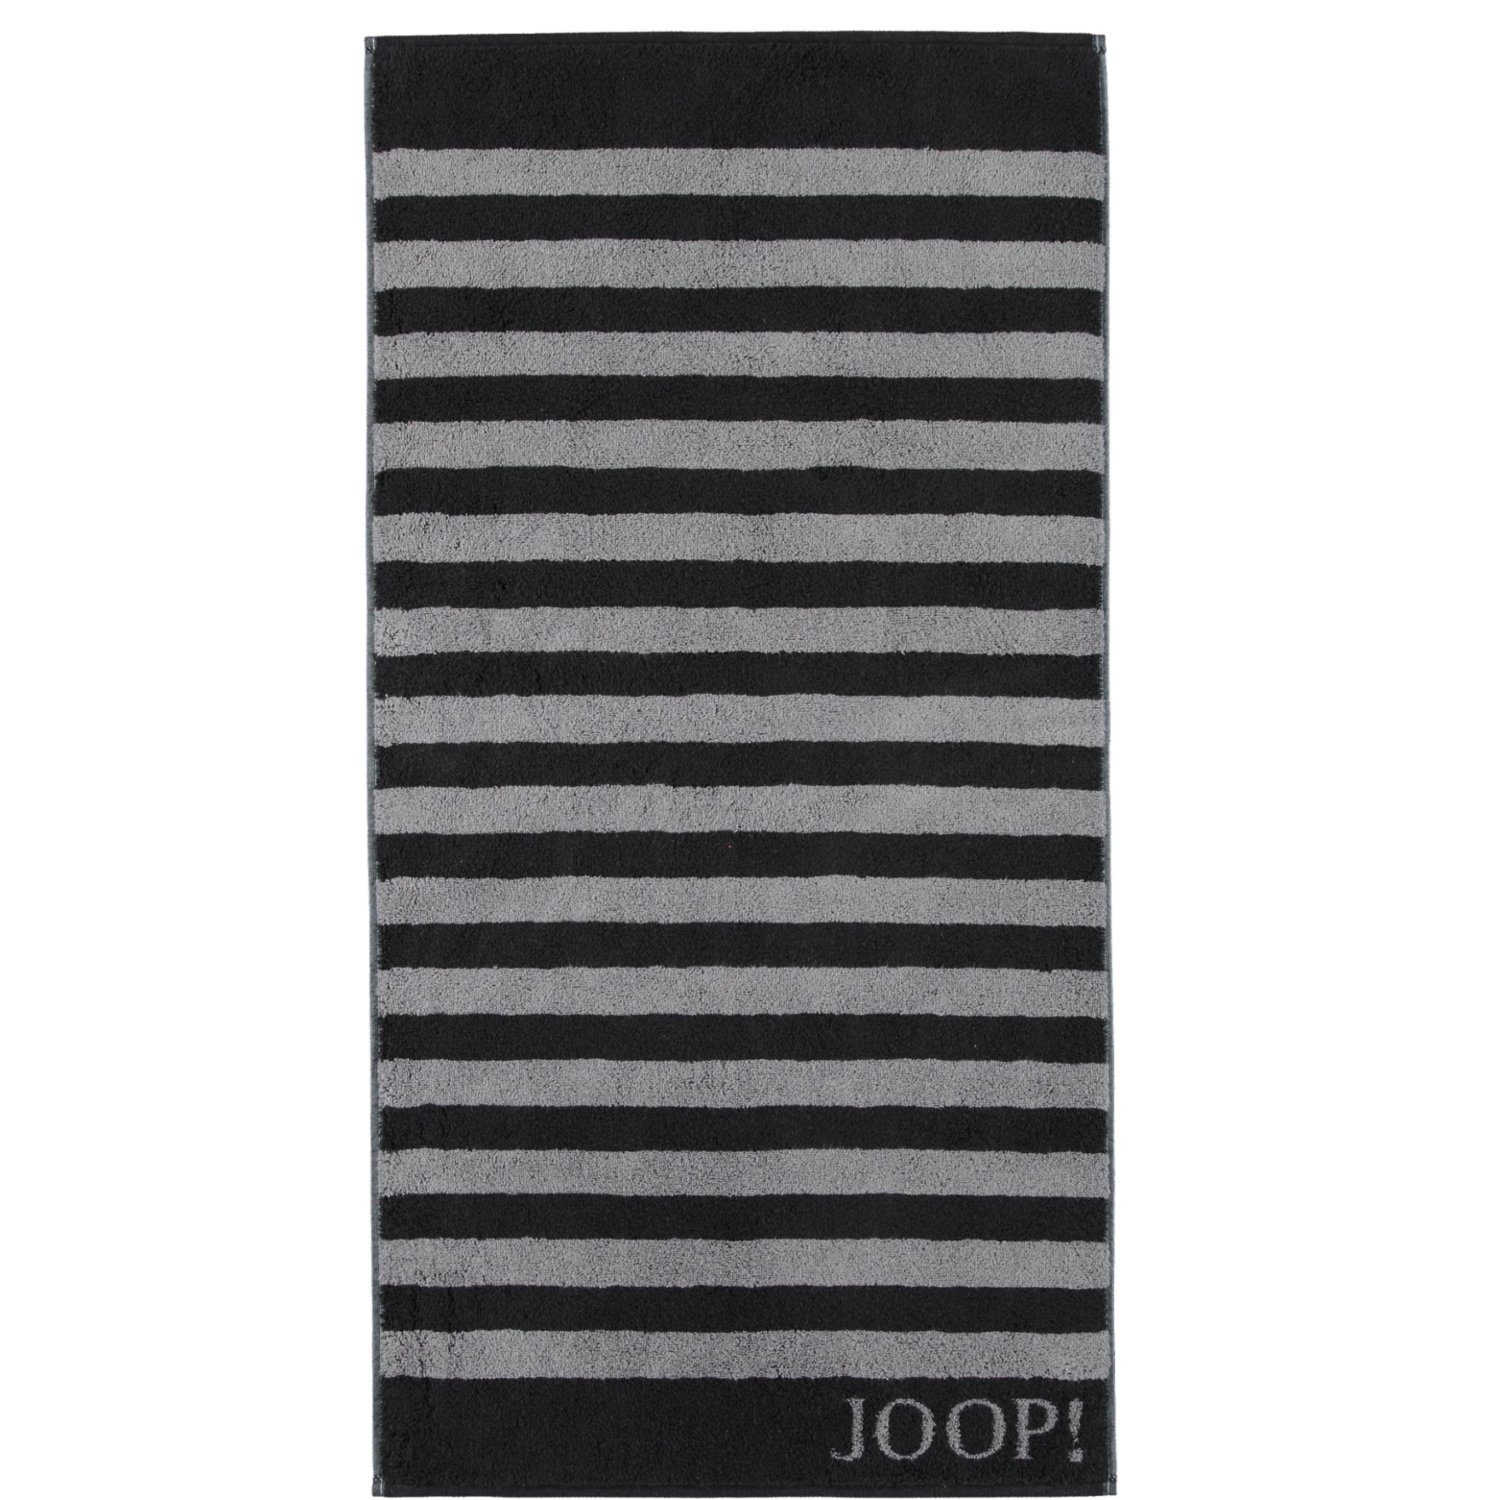 Joop! Handtücher Classic Stripes 1610, 100% Baumwolle schwarz